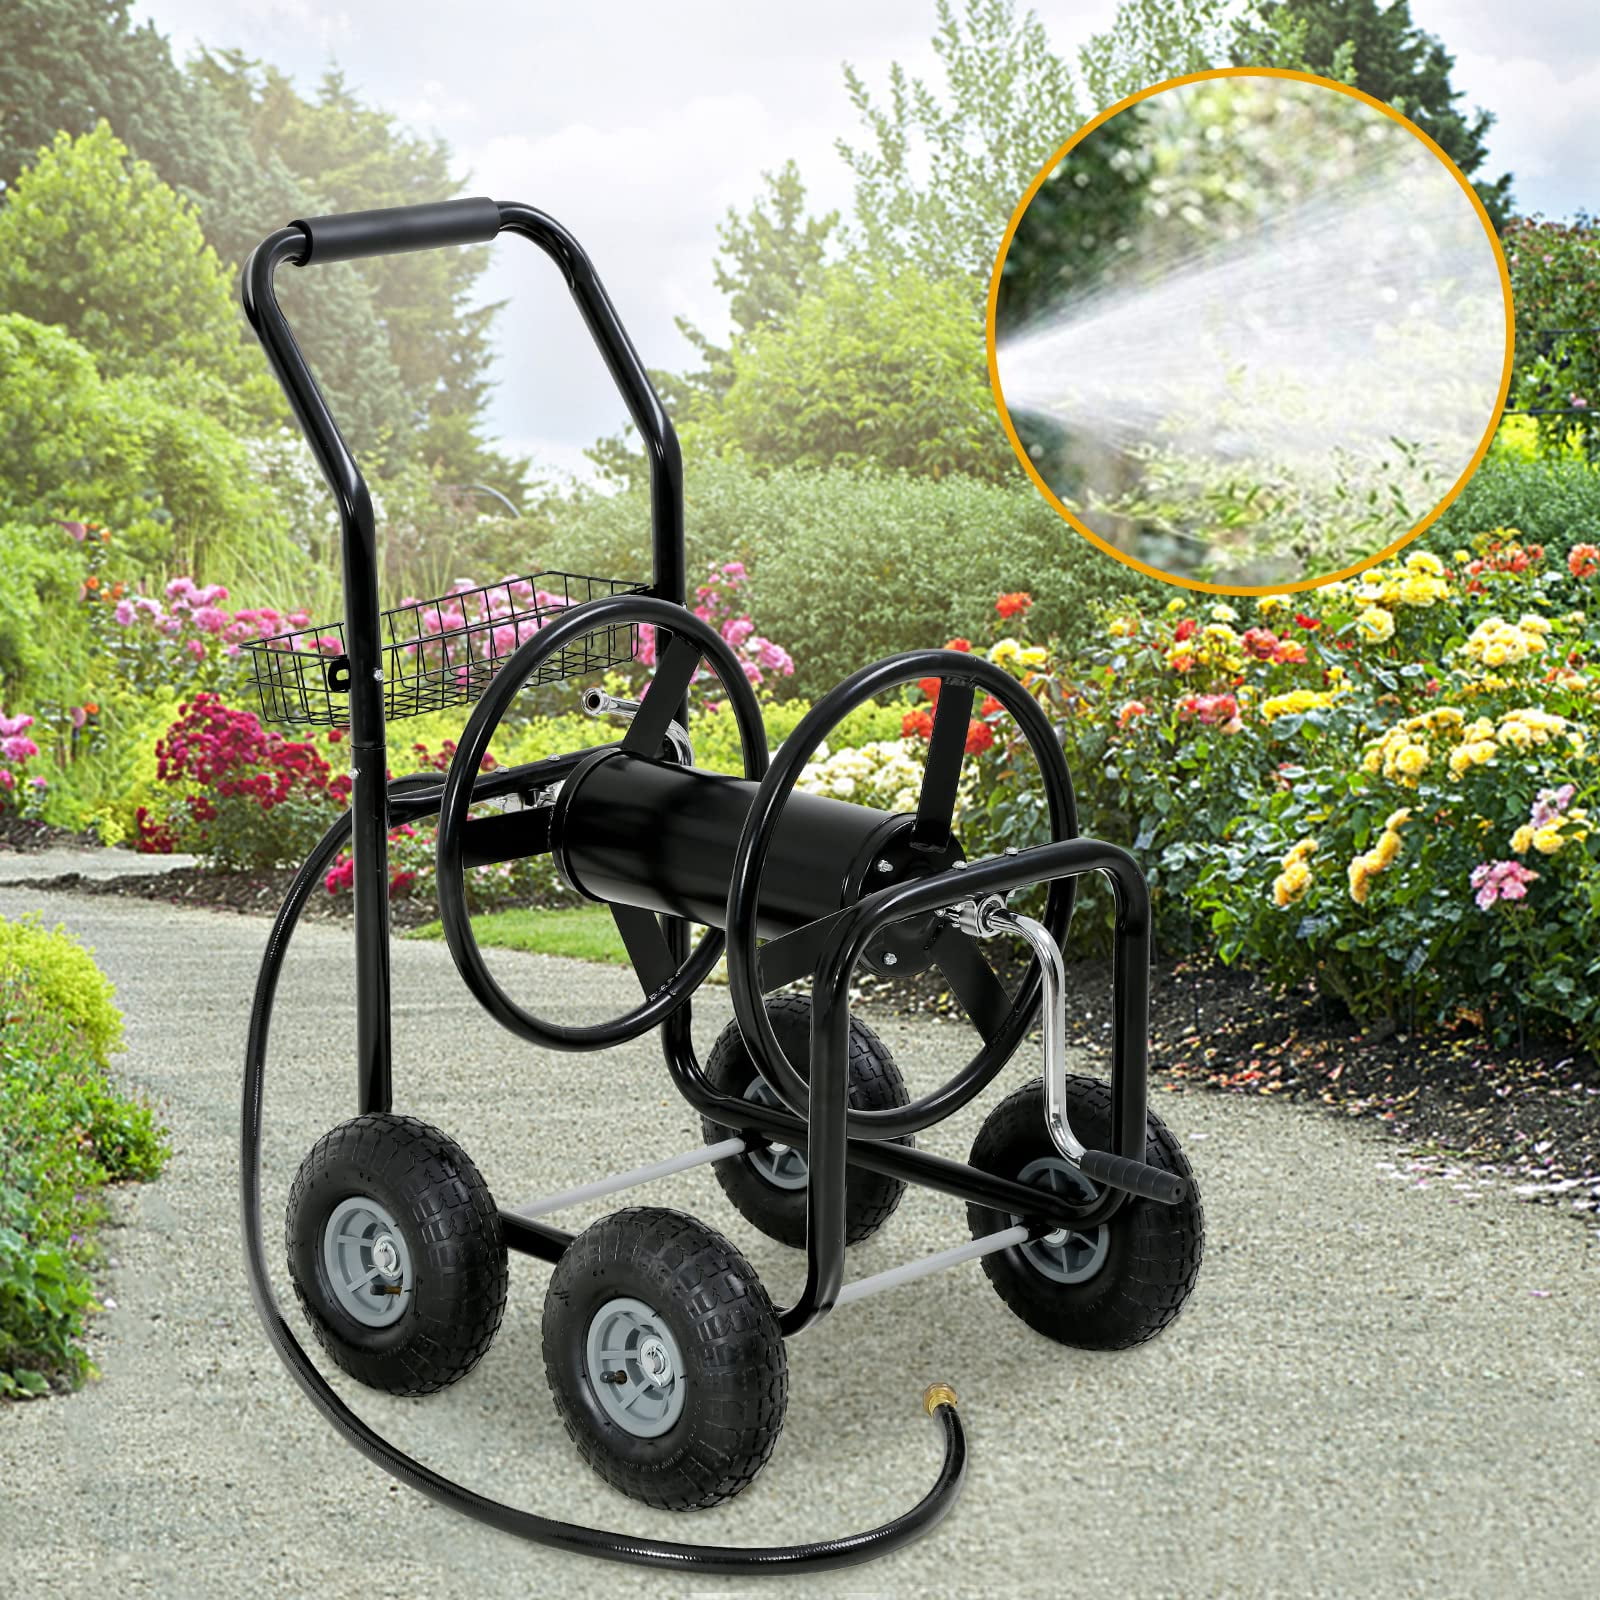 Garden Hose Reel Cart, Hose Reel Cart with 4 Wheels, Heavy Duty